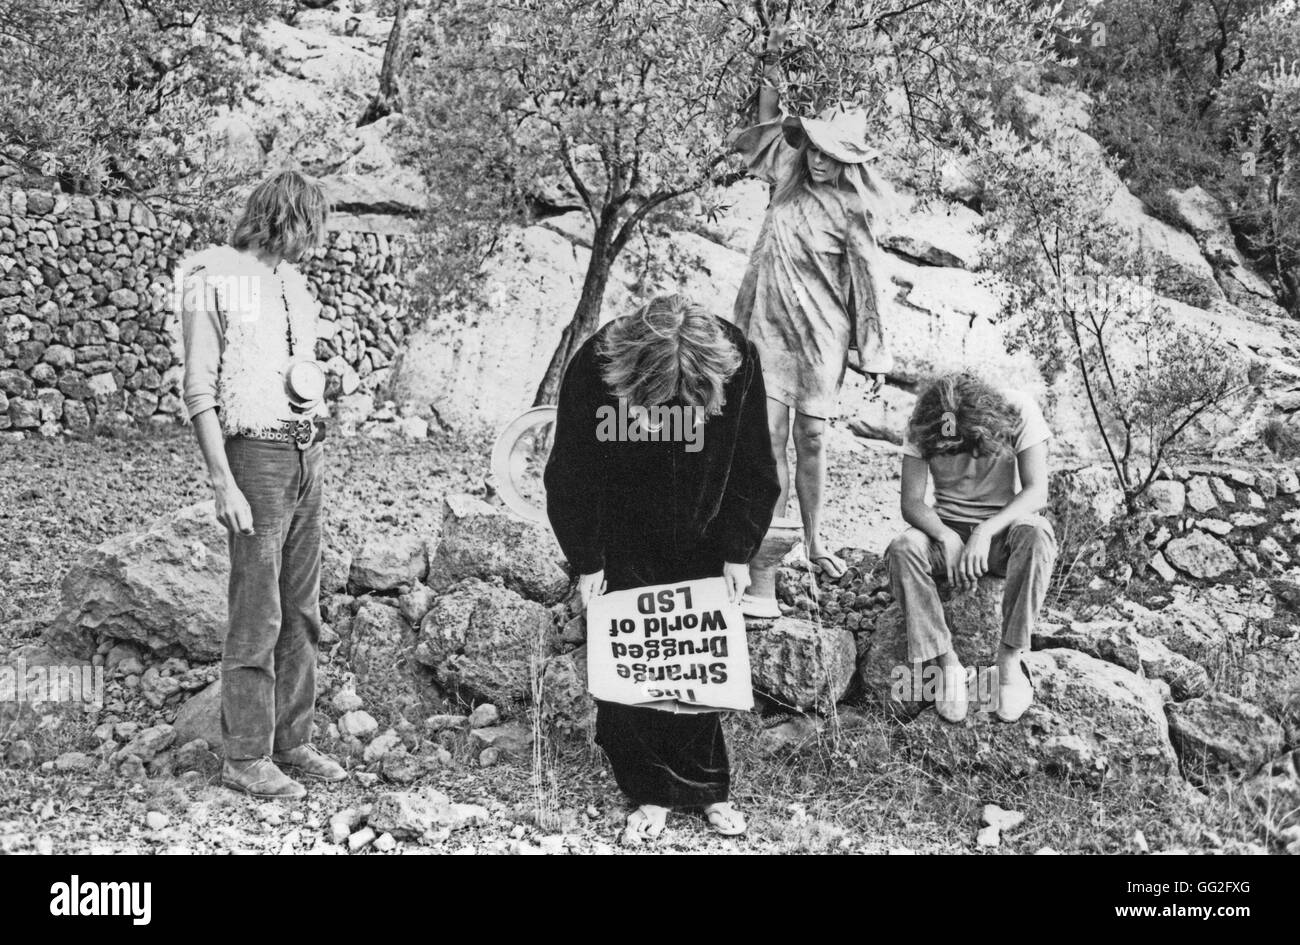 Banana Moon, groupe de rock psychédélique. Daevid Allen, Gilli Smyth, Marc Blanc, Patrick Fontaine Deià (Deya), îles Baléares, 1968 Banque D'Images